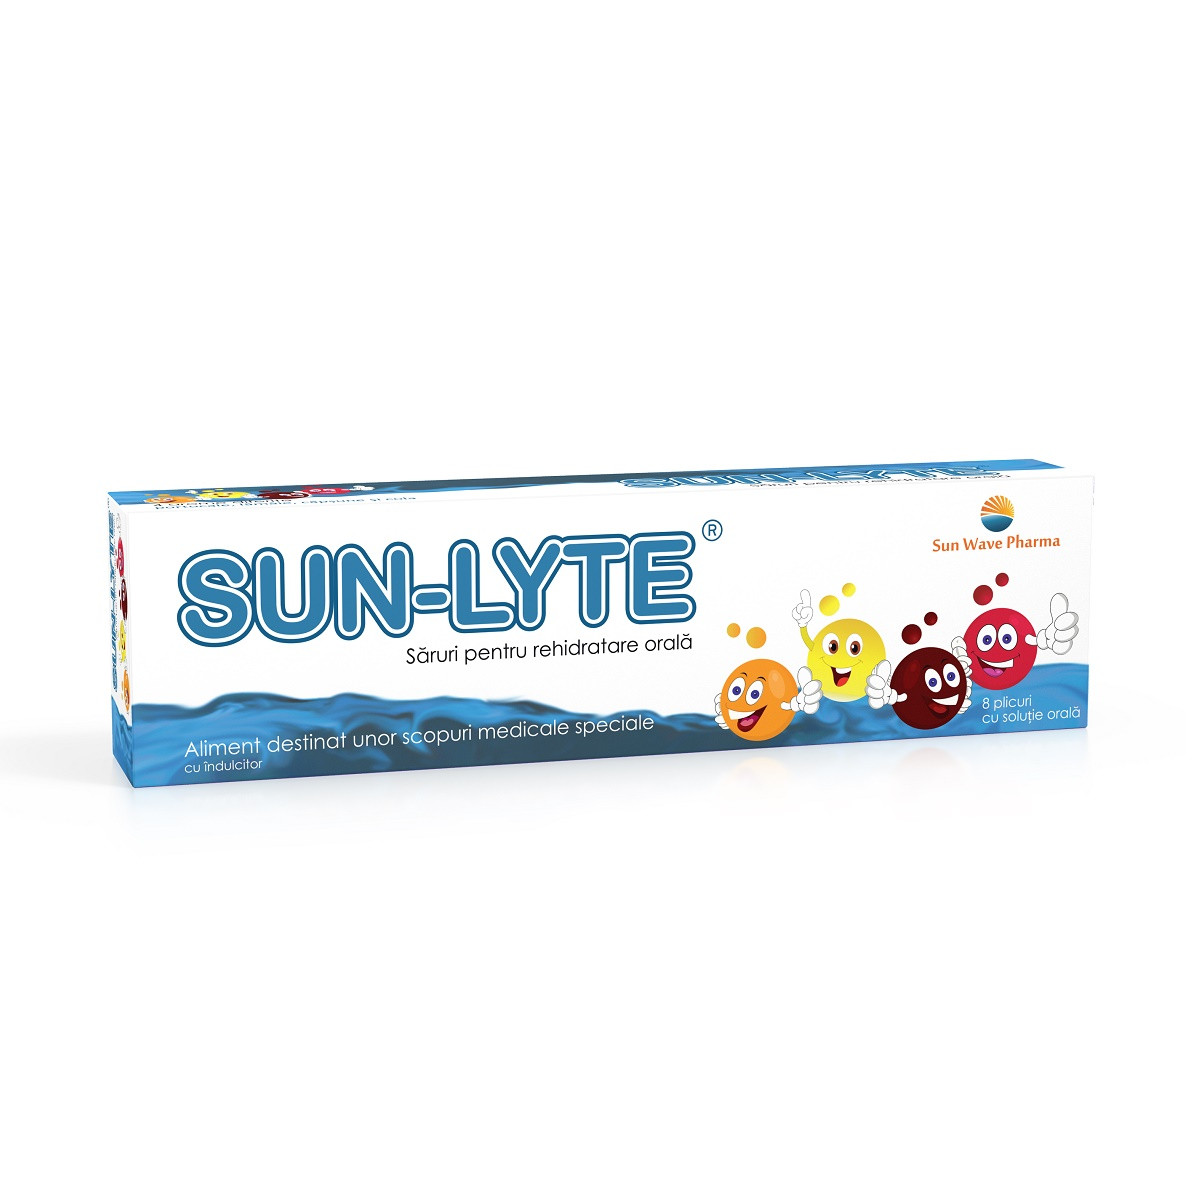 Sun Wave Pharma Sun wave sunlyte 8 plicuri